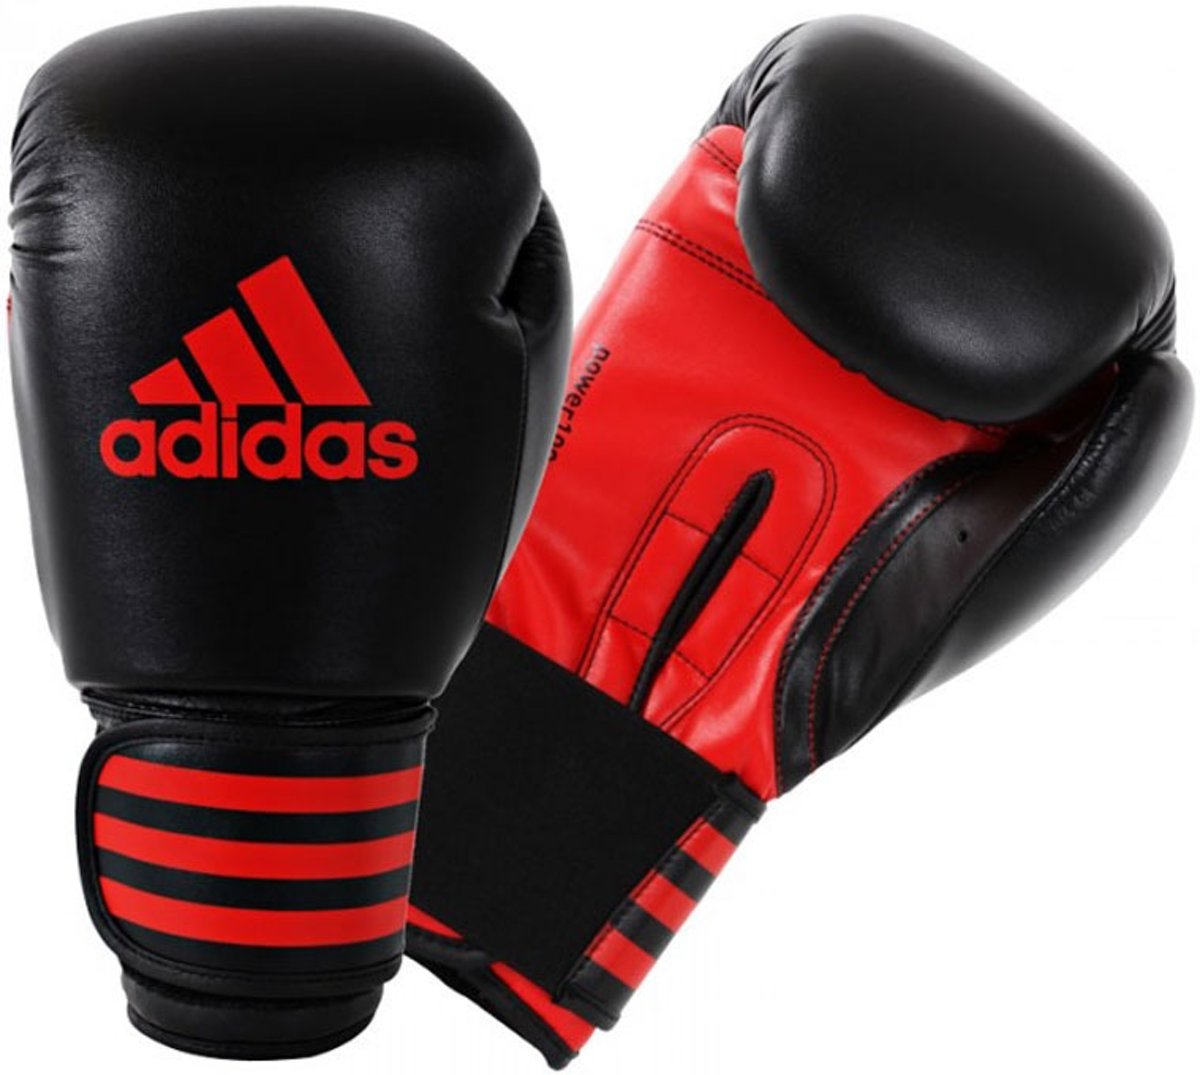 Адидас бокс. Боксерские перчатки adidas 10oz. Перчатки adidas боксёрские черно красные. Перчатки для бокса адидас. Перчатки адидас черно красные.